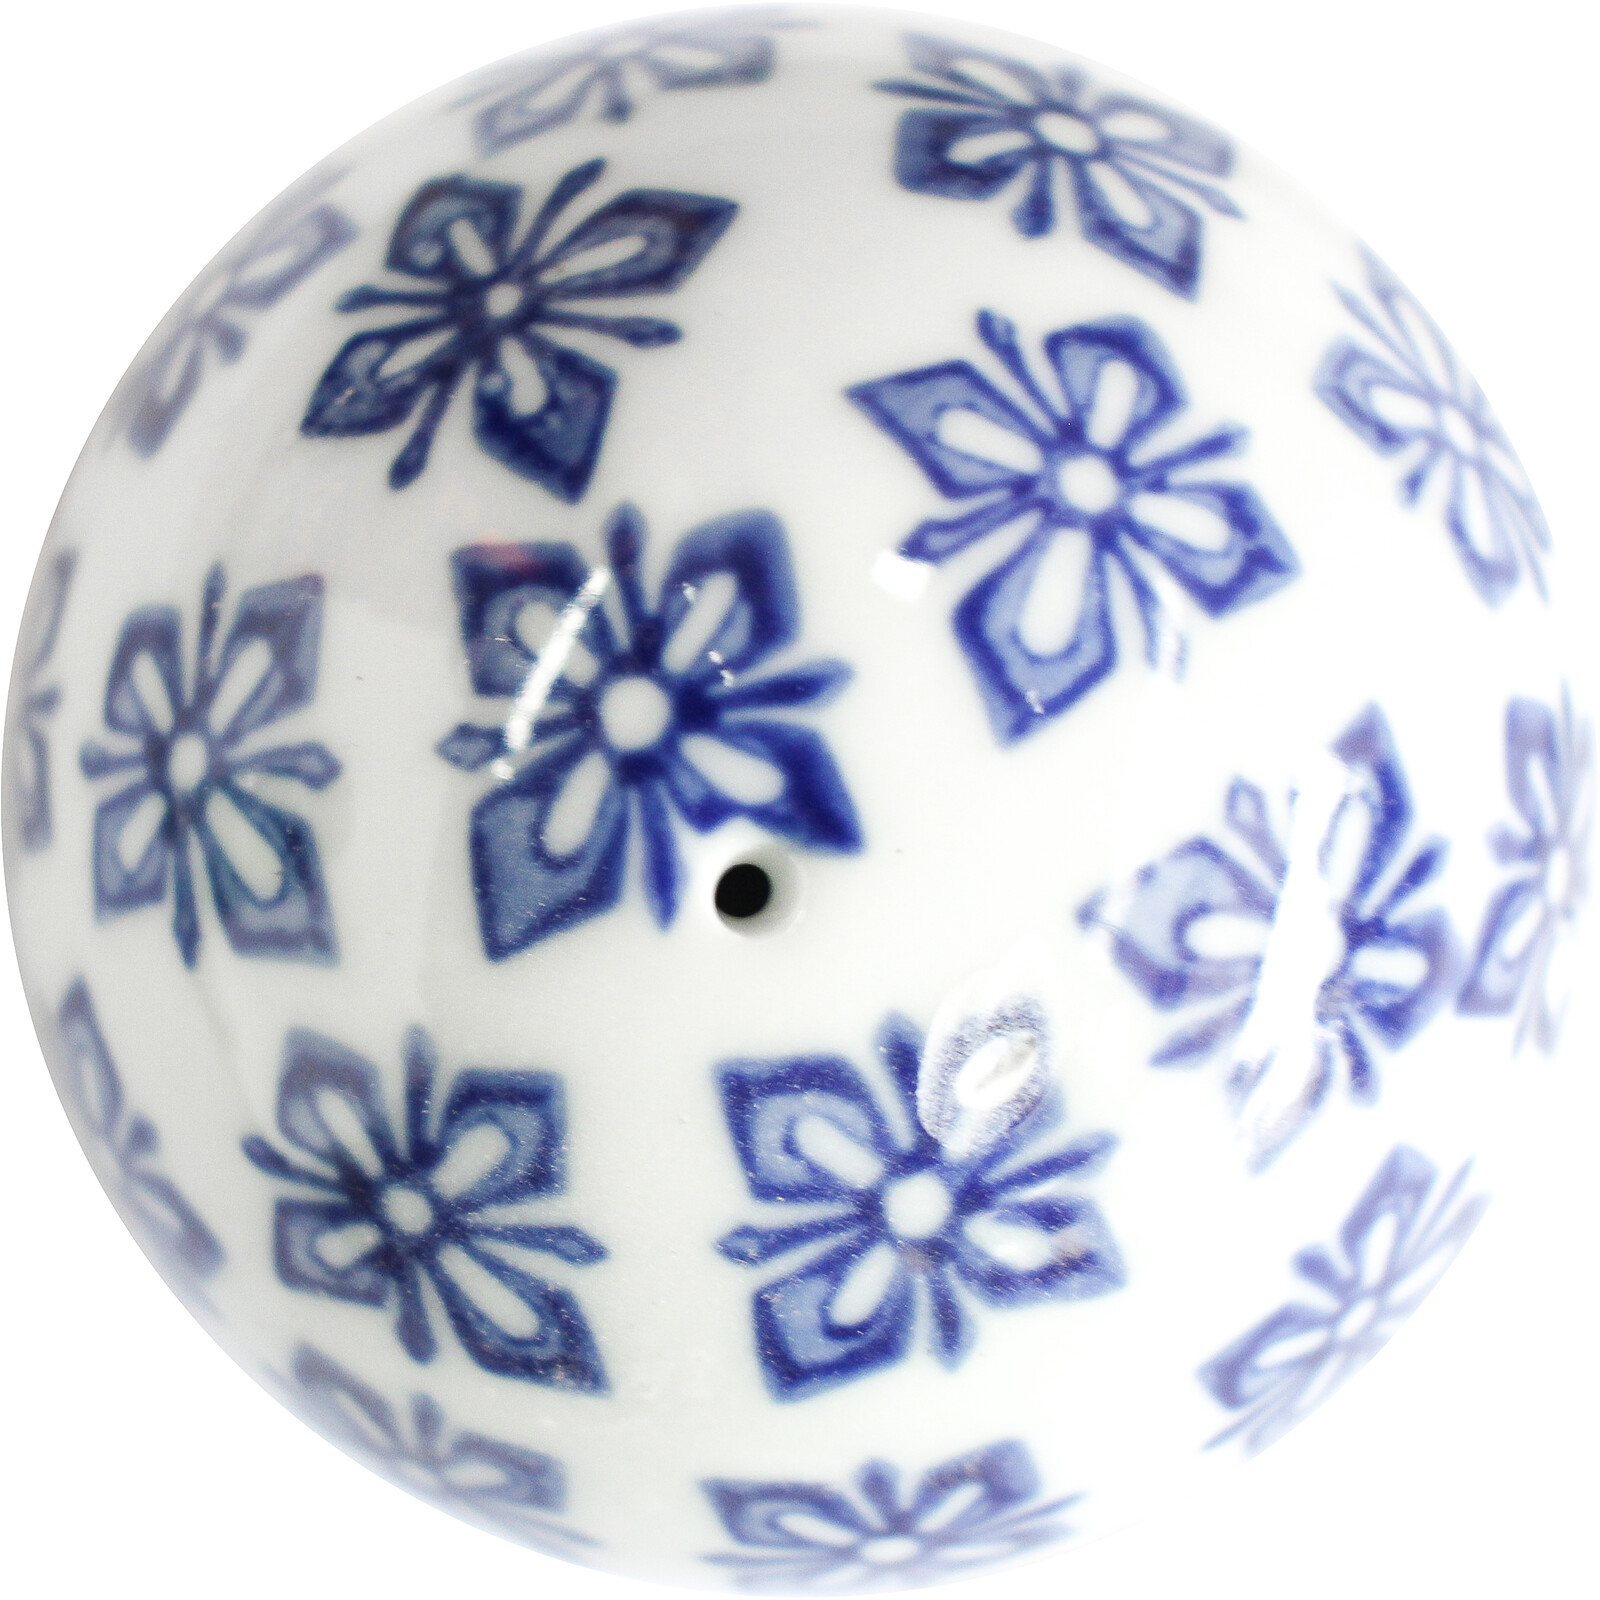 Ceramic Blue & White Balls Mix S/3